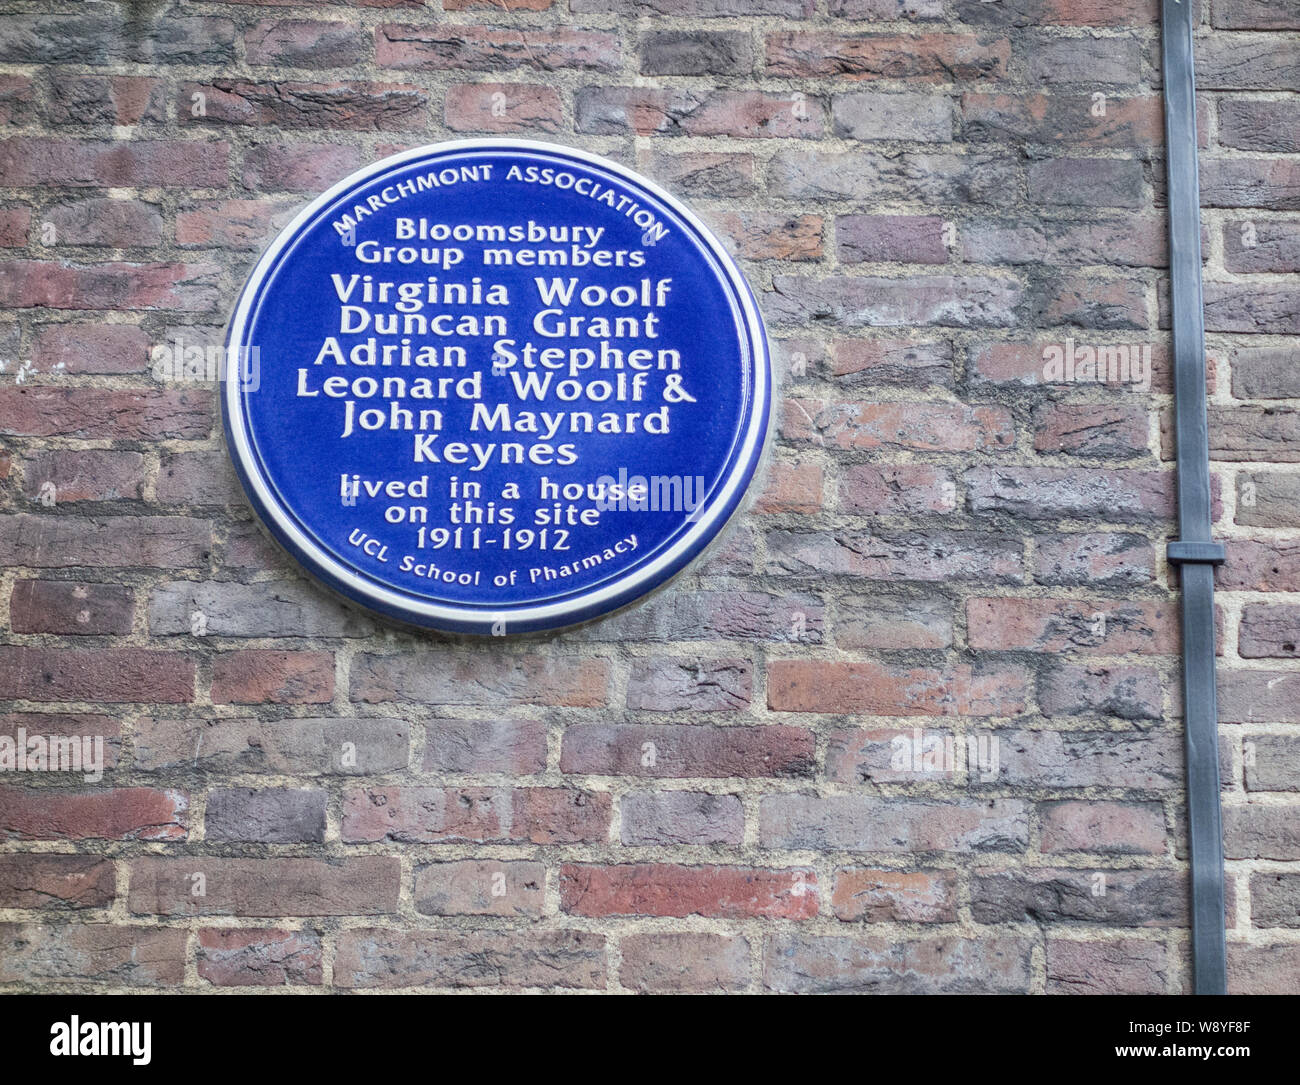 Blue plaque commemorating the Bloomsbury Group members: Virginia Woolf, Duncan Grant, Adrian Stephen, Leonard Woolf & John Maynard Keynes, London, UK Stock Photo